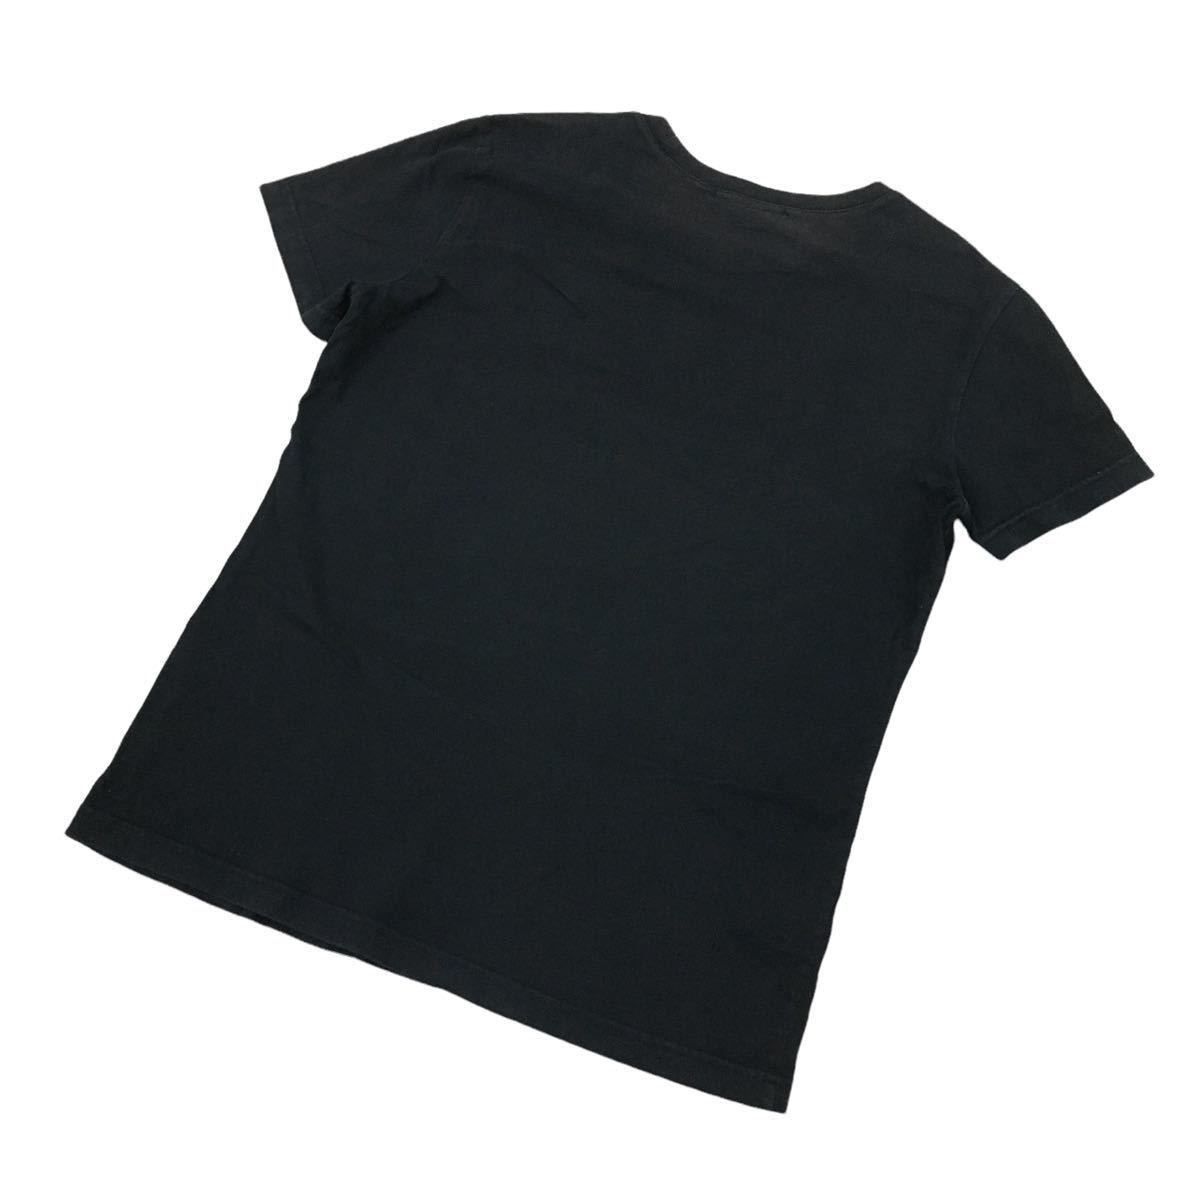 ★B-158 GUESS ゲス エンボス ロゴ 半袖 Tシャツ カットソー トップス size S ブラック メンズ_画像5